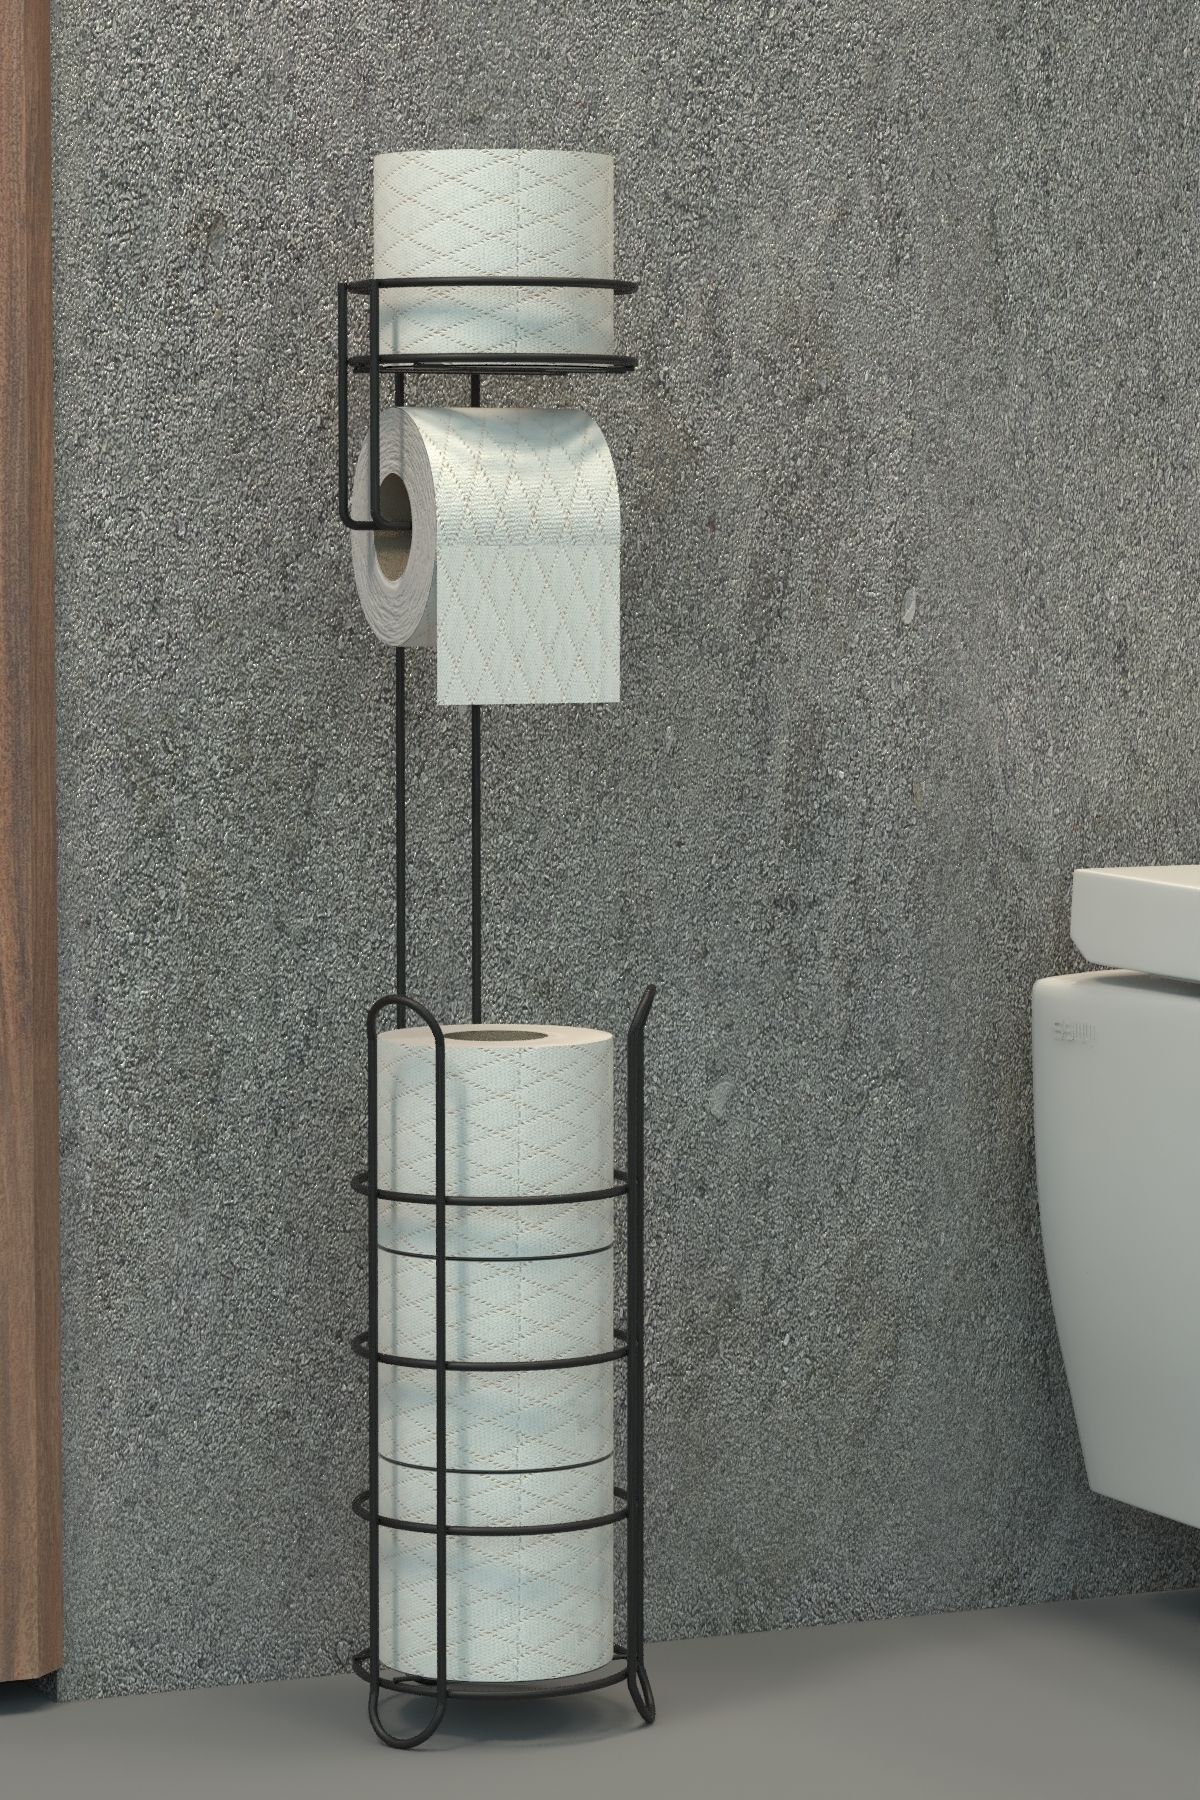 zabata Tuvalet Kağıtlığı Wc Kağıtlık Yedekli Metal Tuvalet Kağıdı Standı Tutacağı Askısı